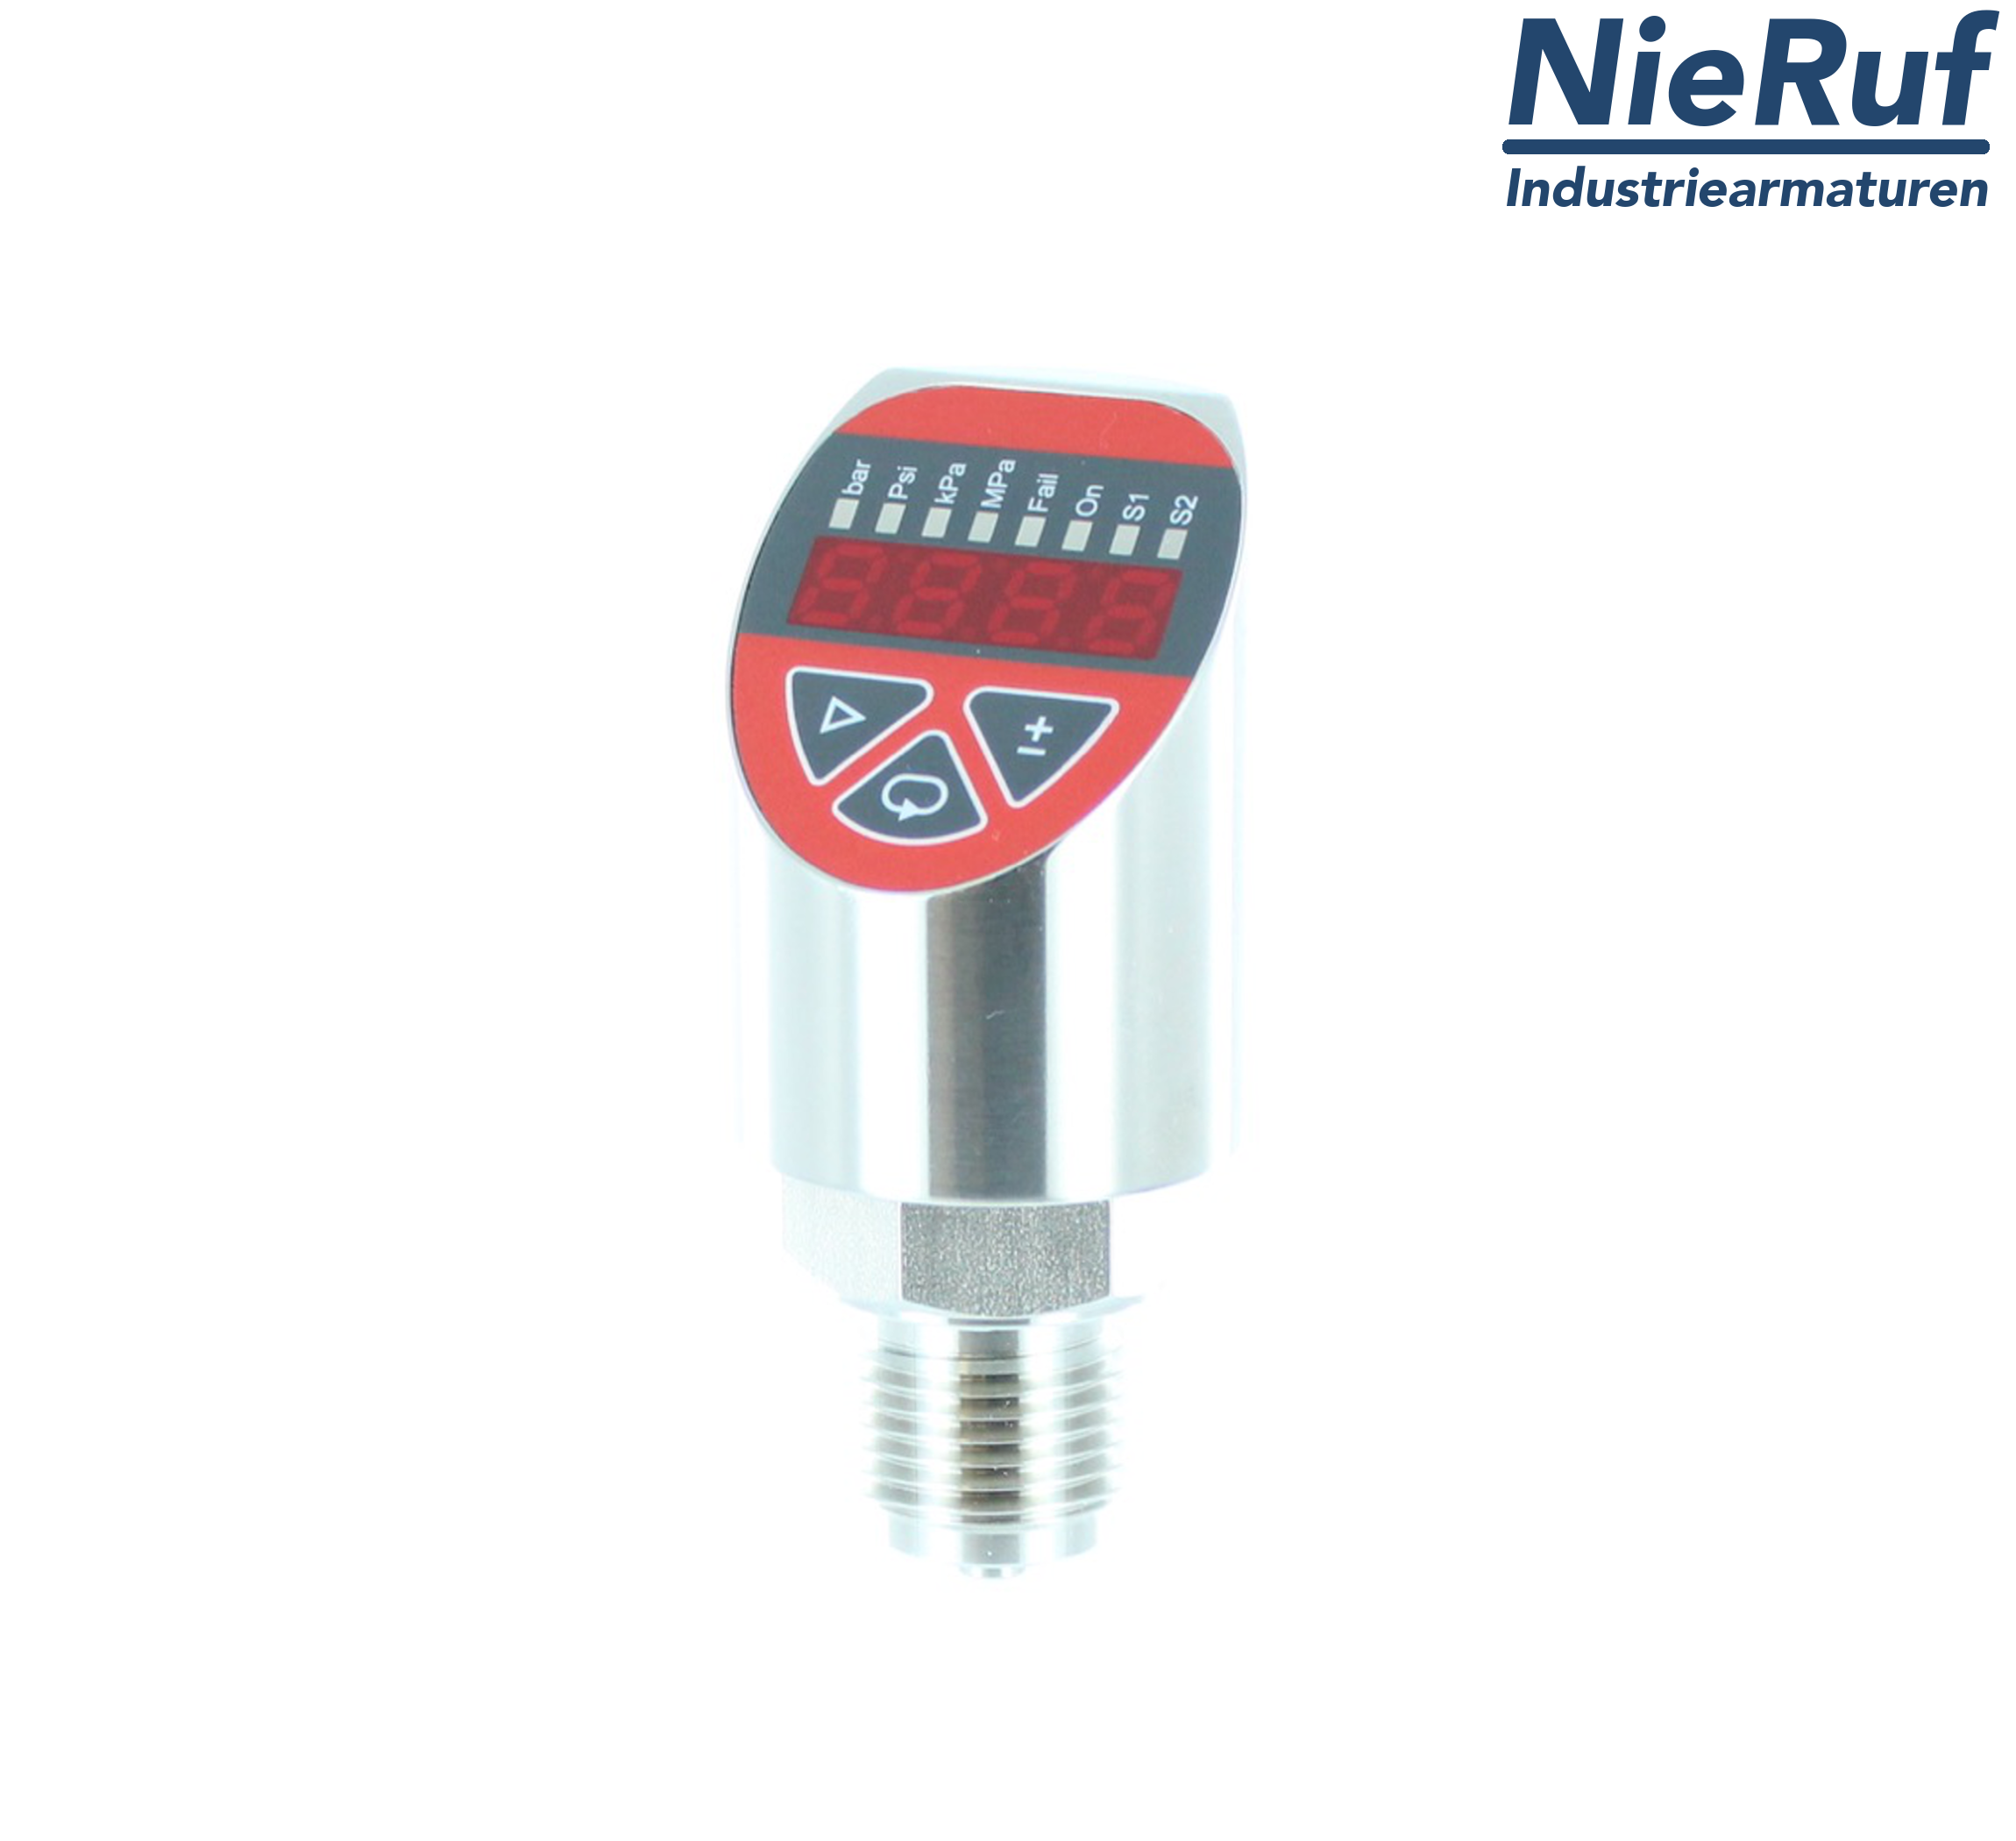 digital pressure sensor G 1/4" B 4-wire: 1xPNP, 1x4 - 20mA, Desina FPM 0,0 - 10,0 bar